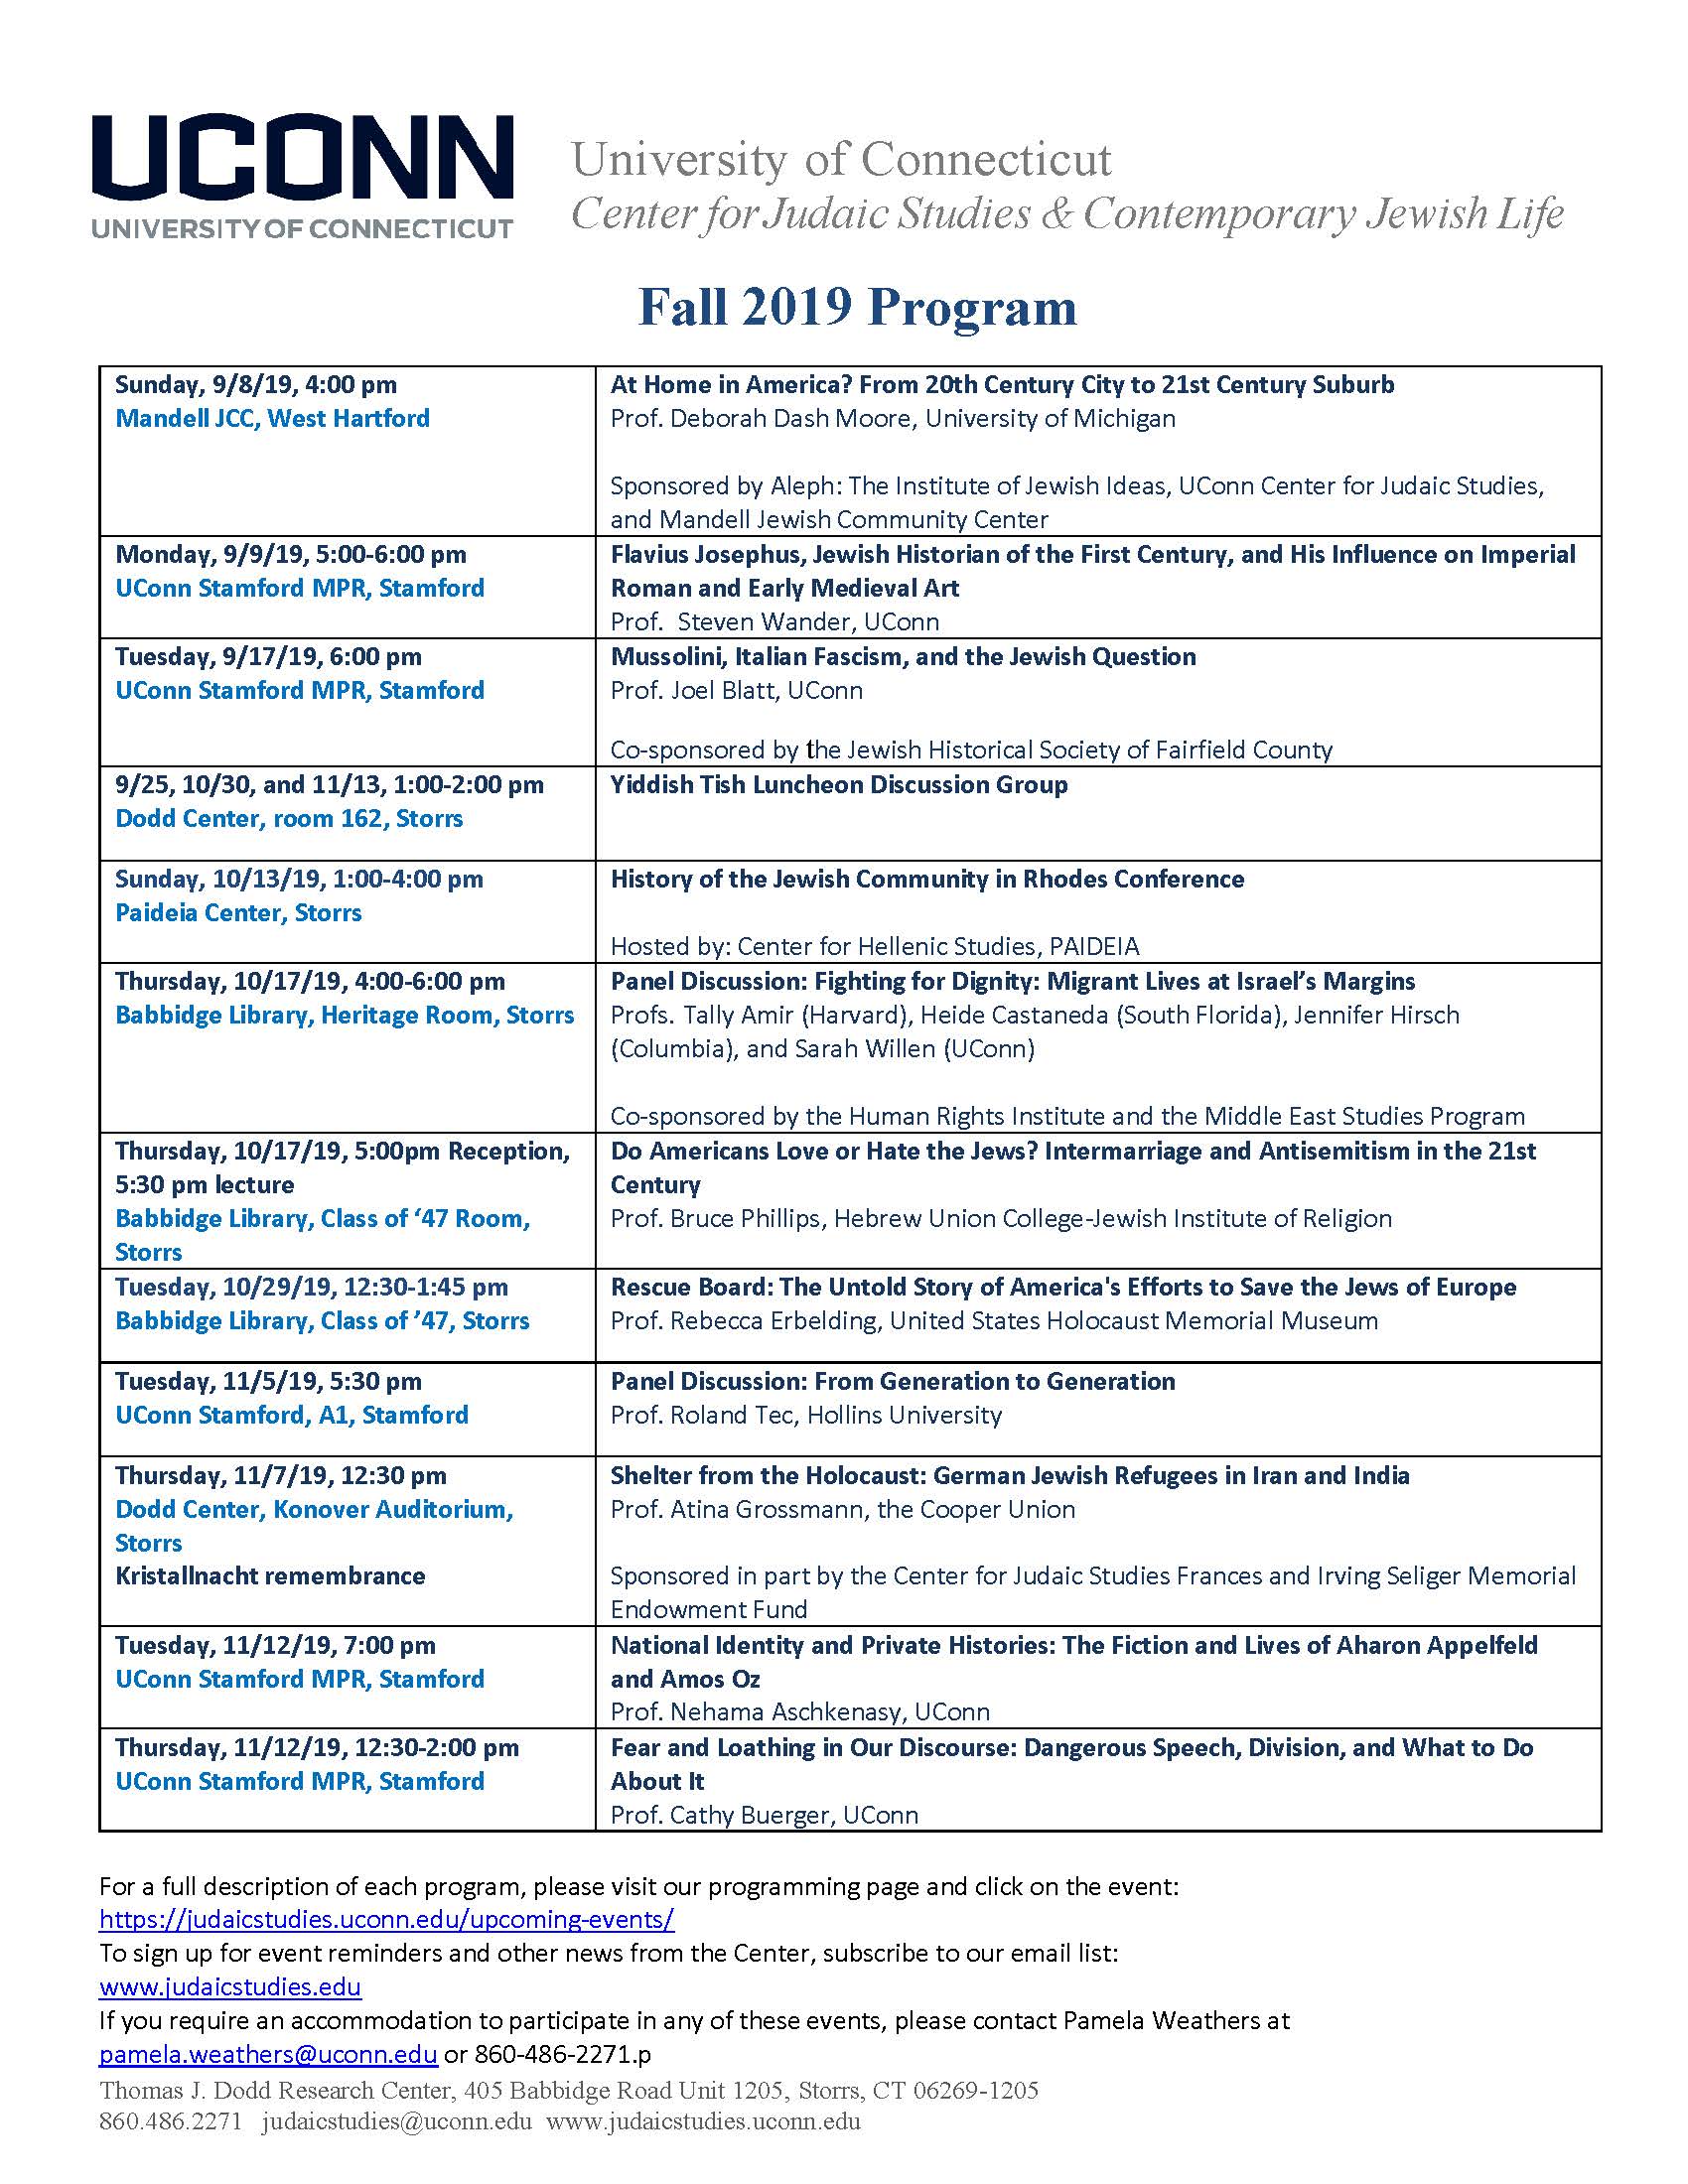 Fall 2019 Program UConn Center for Judaic Studies